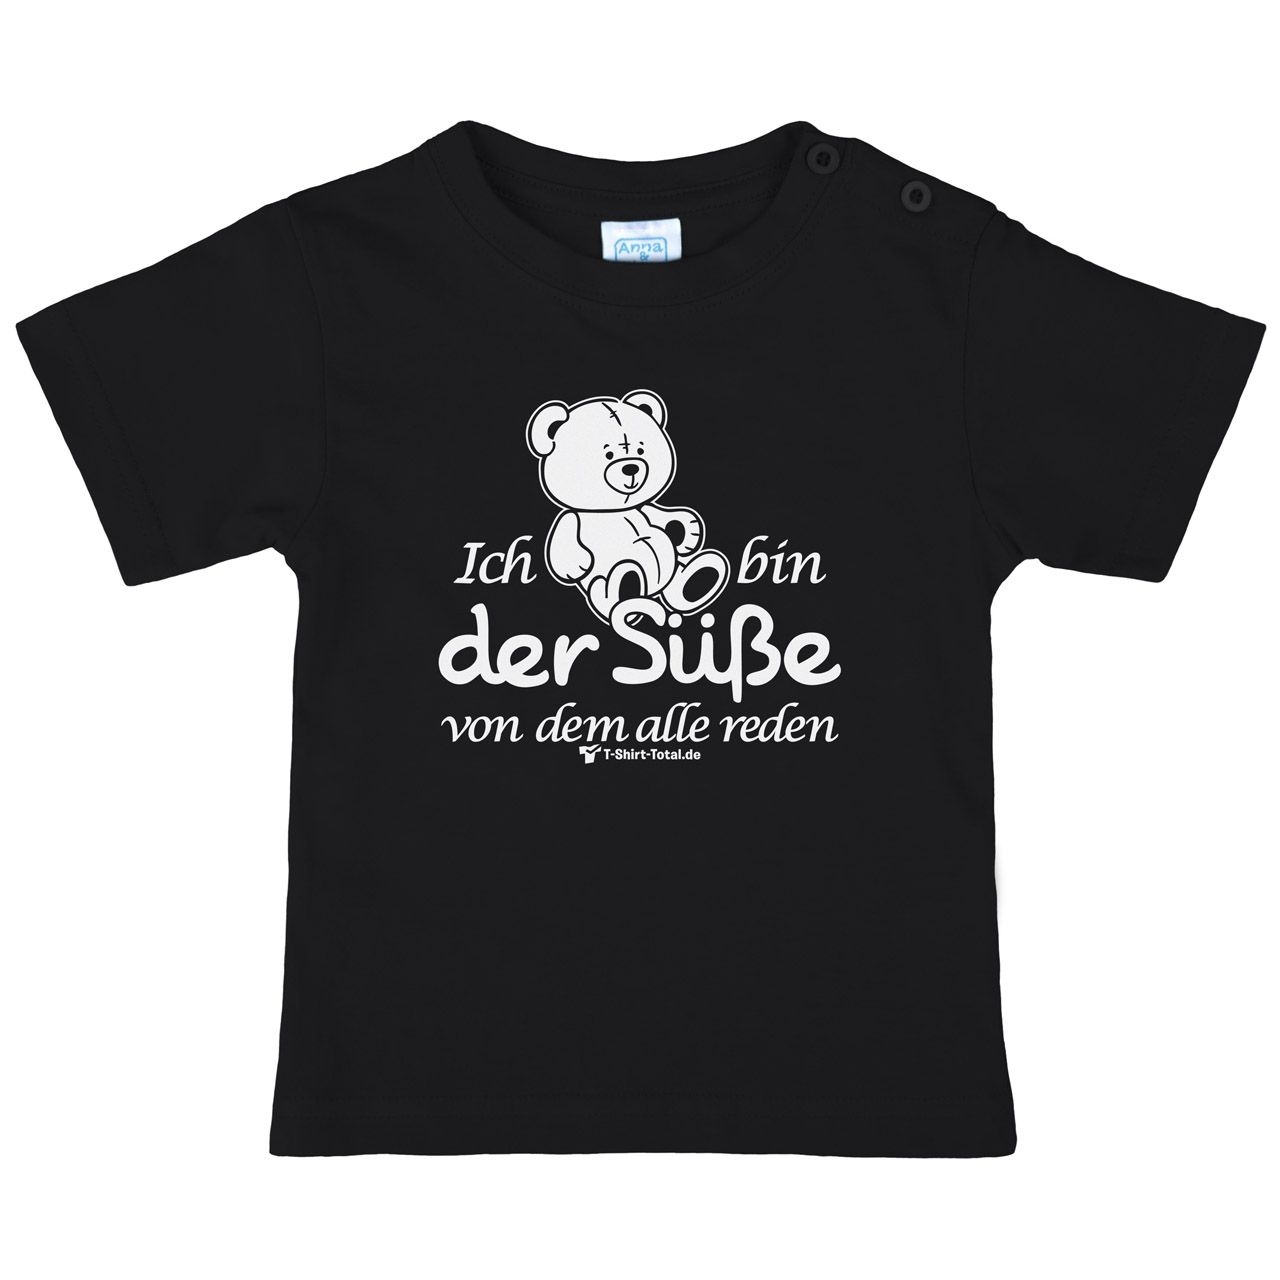 Der Süße Kinder T-Shirt schwarz 56 / 62